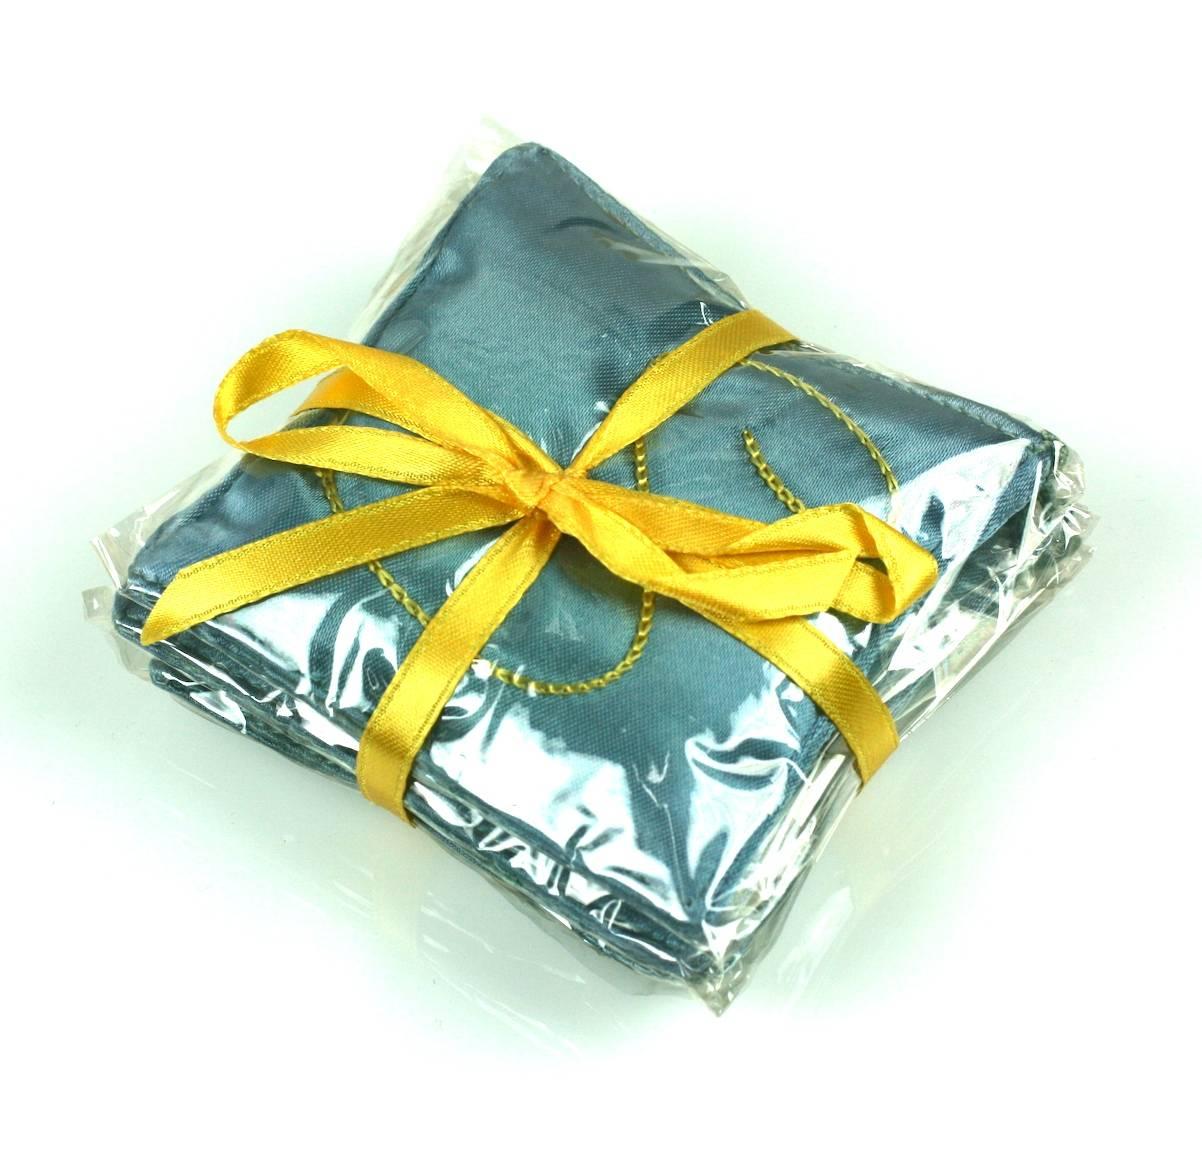 Schiaparelli's Mint in Box, 